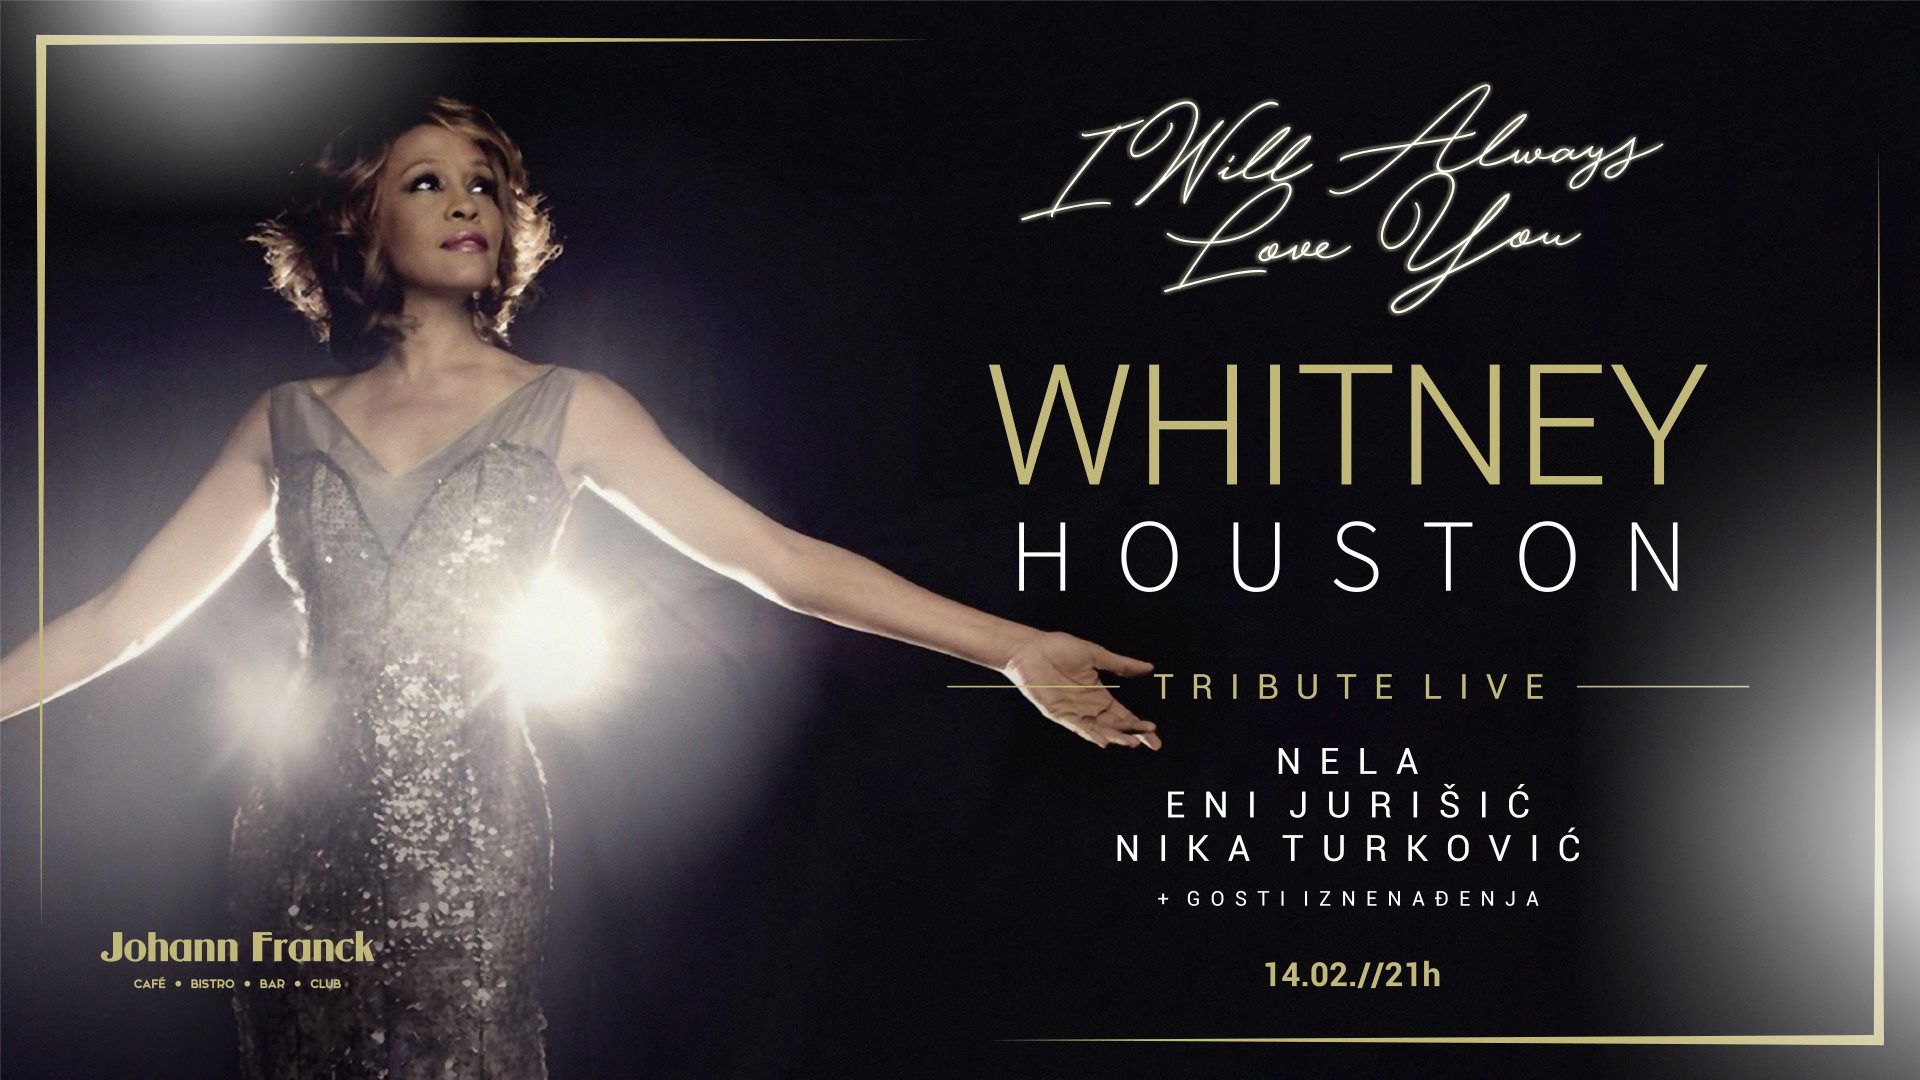 [:en]I will always love you: Tribute to Whitney Houston LIVE 14.02.2018. Johann Franck